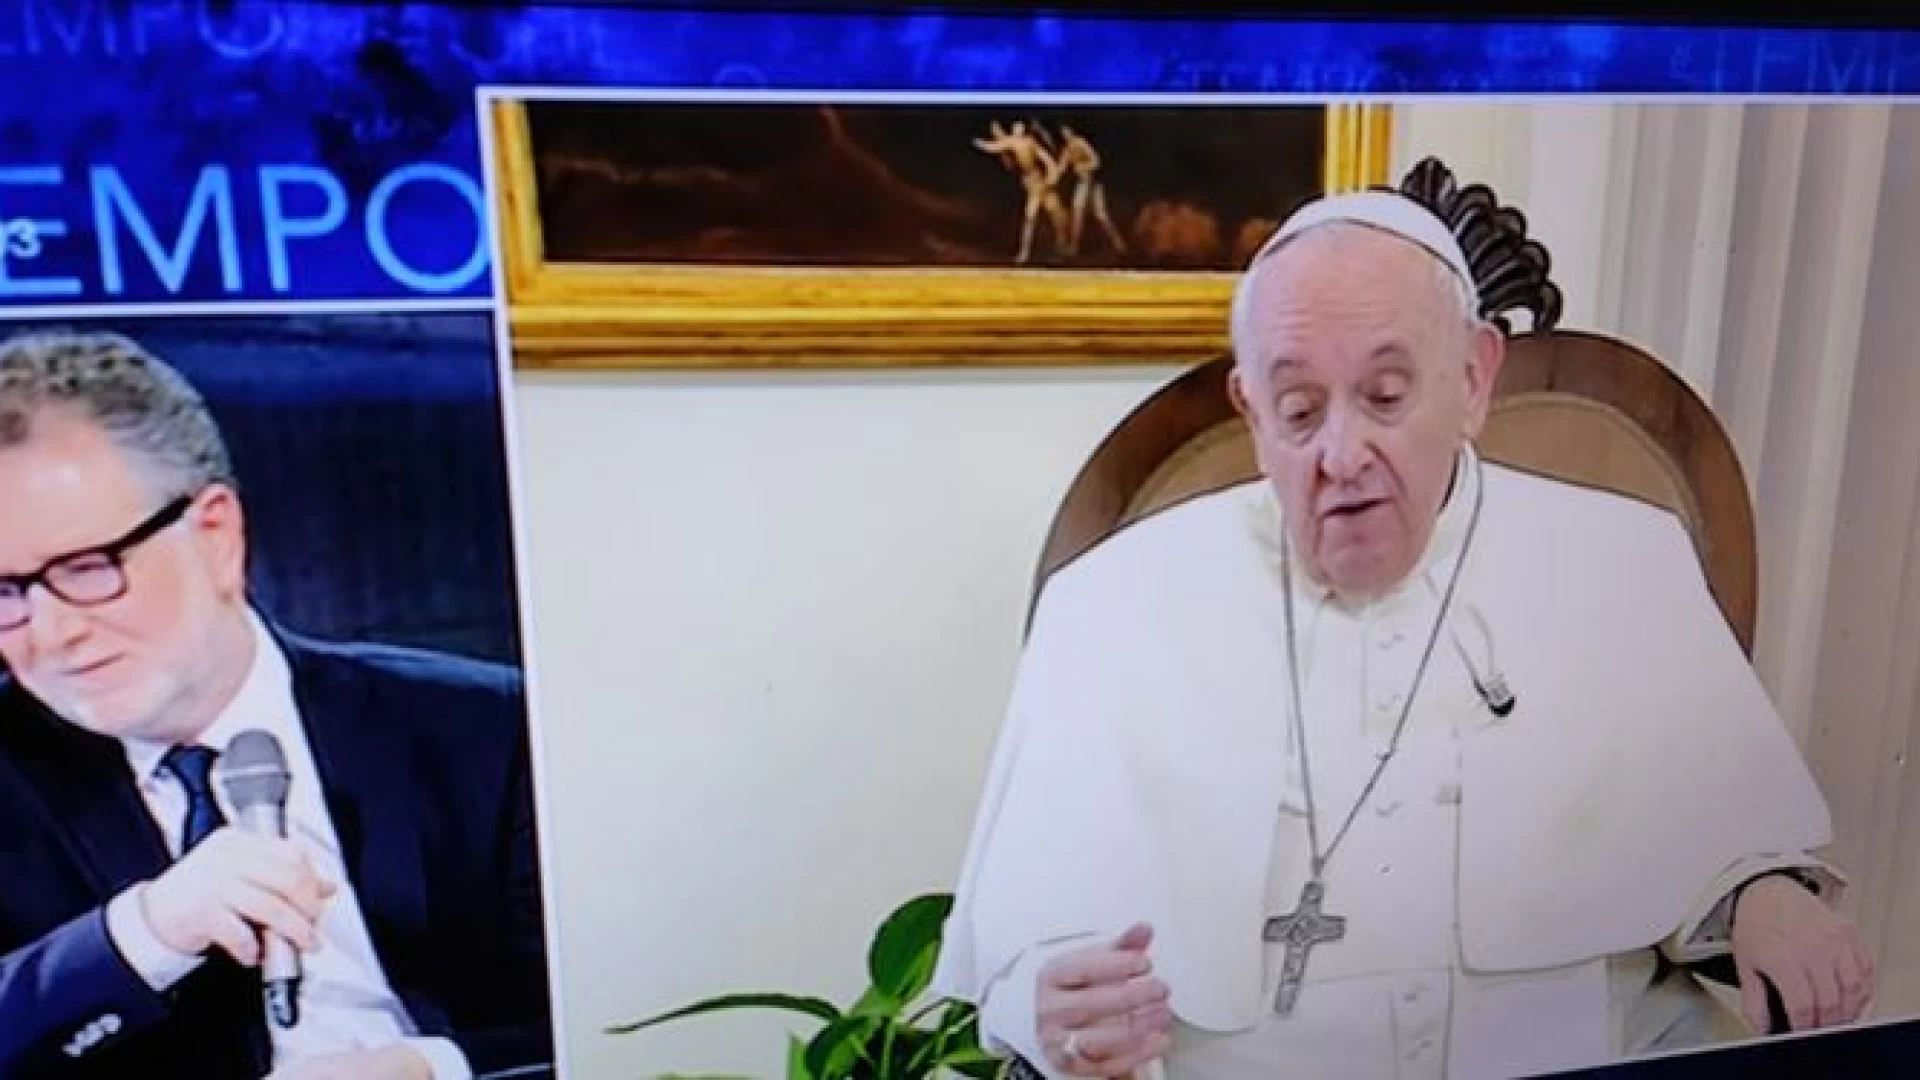 Papa Francesco a Che Tempo che Fa, storica apparizione in tv per un Santo Padre. “Il male del secolo è il chiacchiericcio. Parlate in faccia alle persone”.